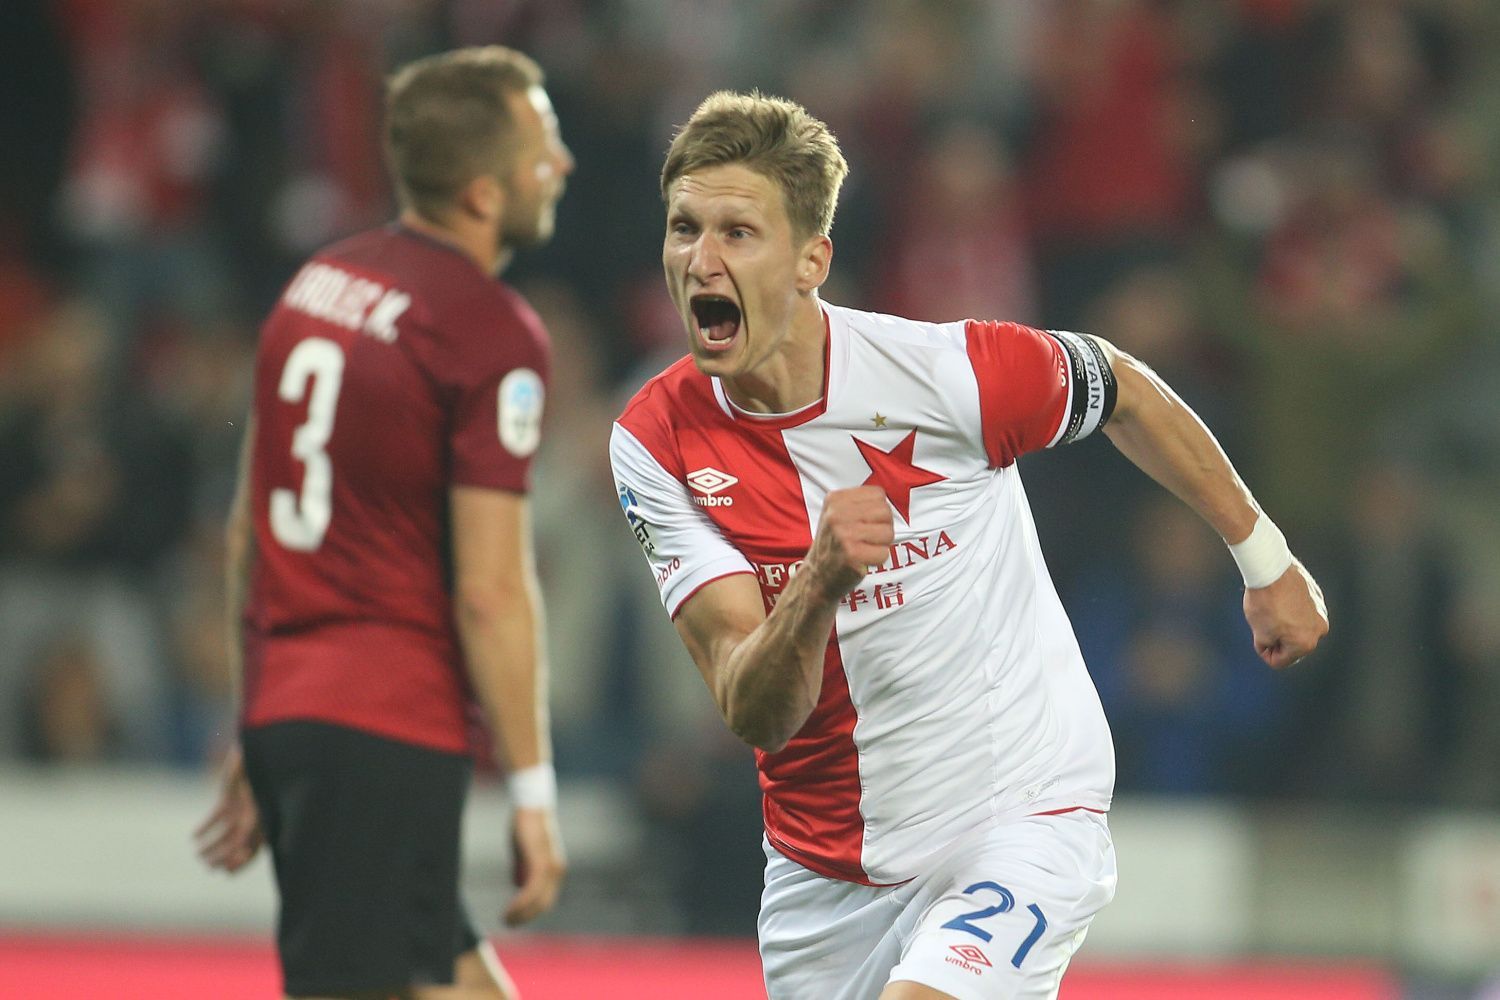 Derby Slavia-Sparta: Milan Škoda